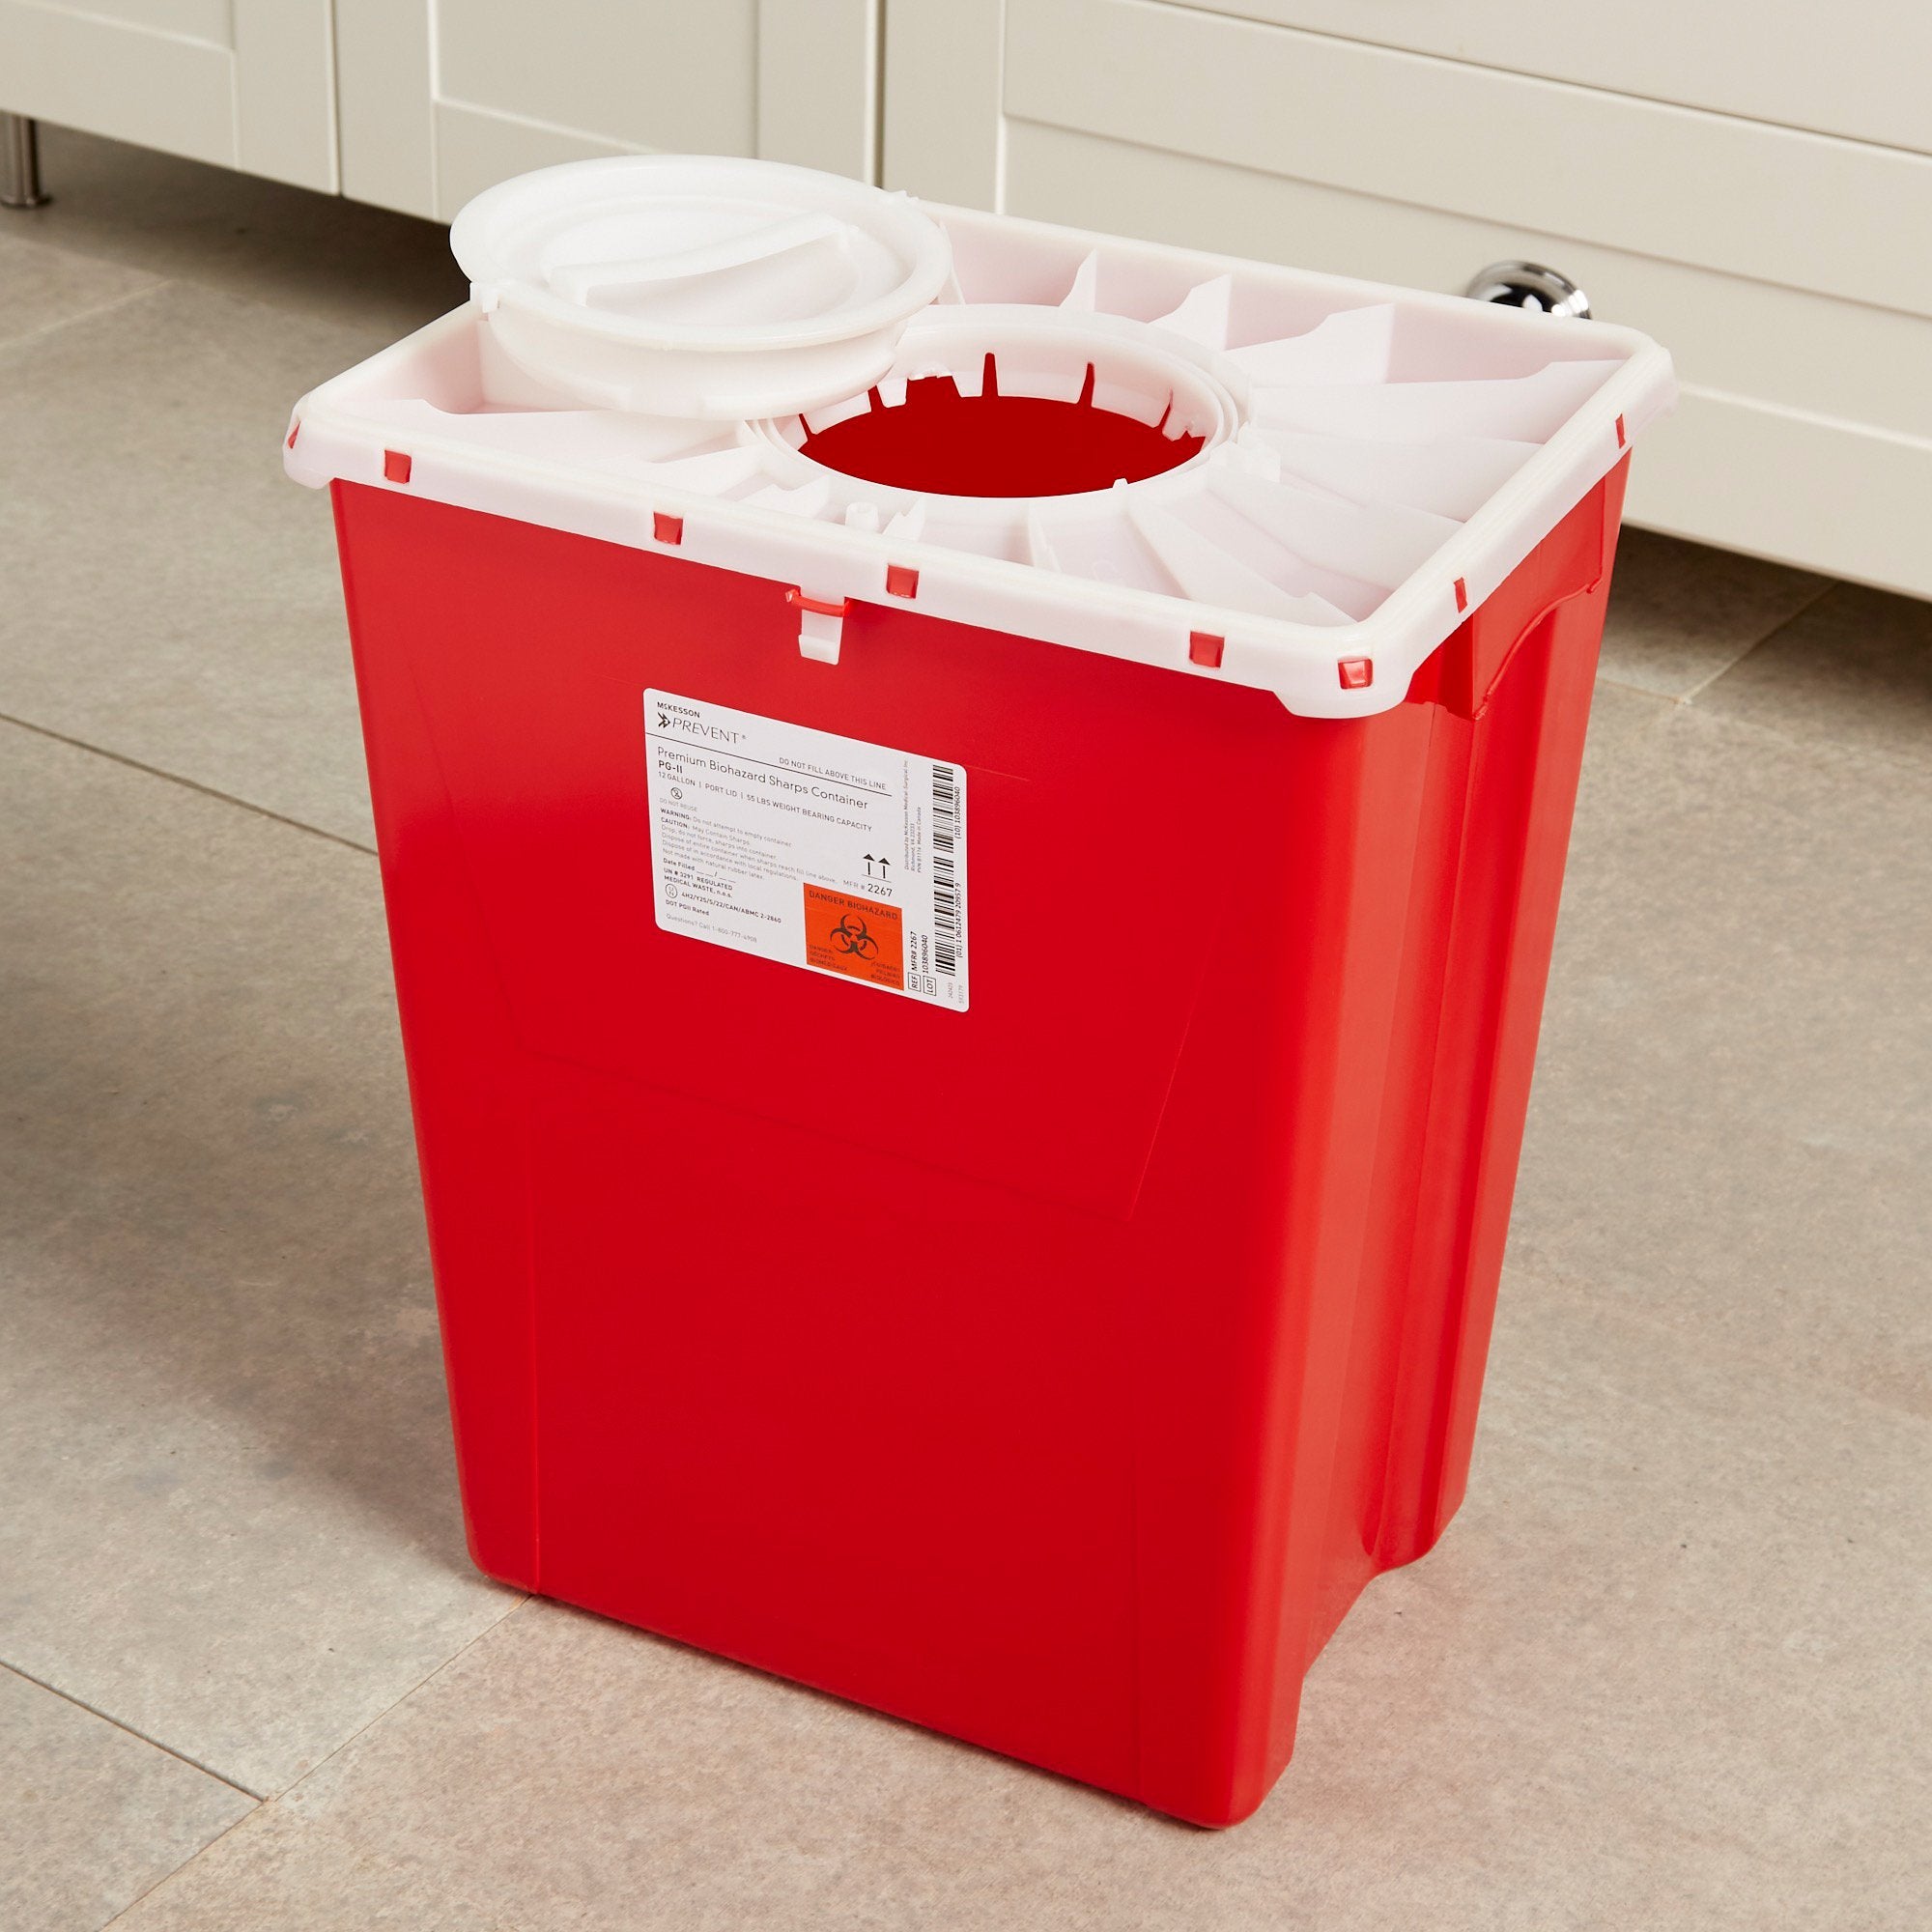 McKesson Prevent® Sharps Container, 12 Gallon, 20-4/5 x 17-3/10 x 13 Inch (8 Units)